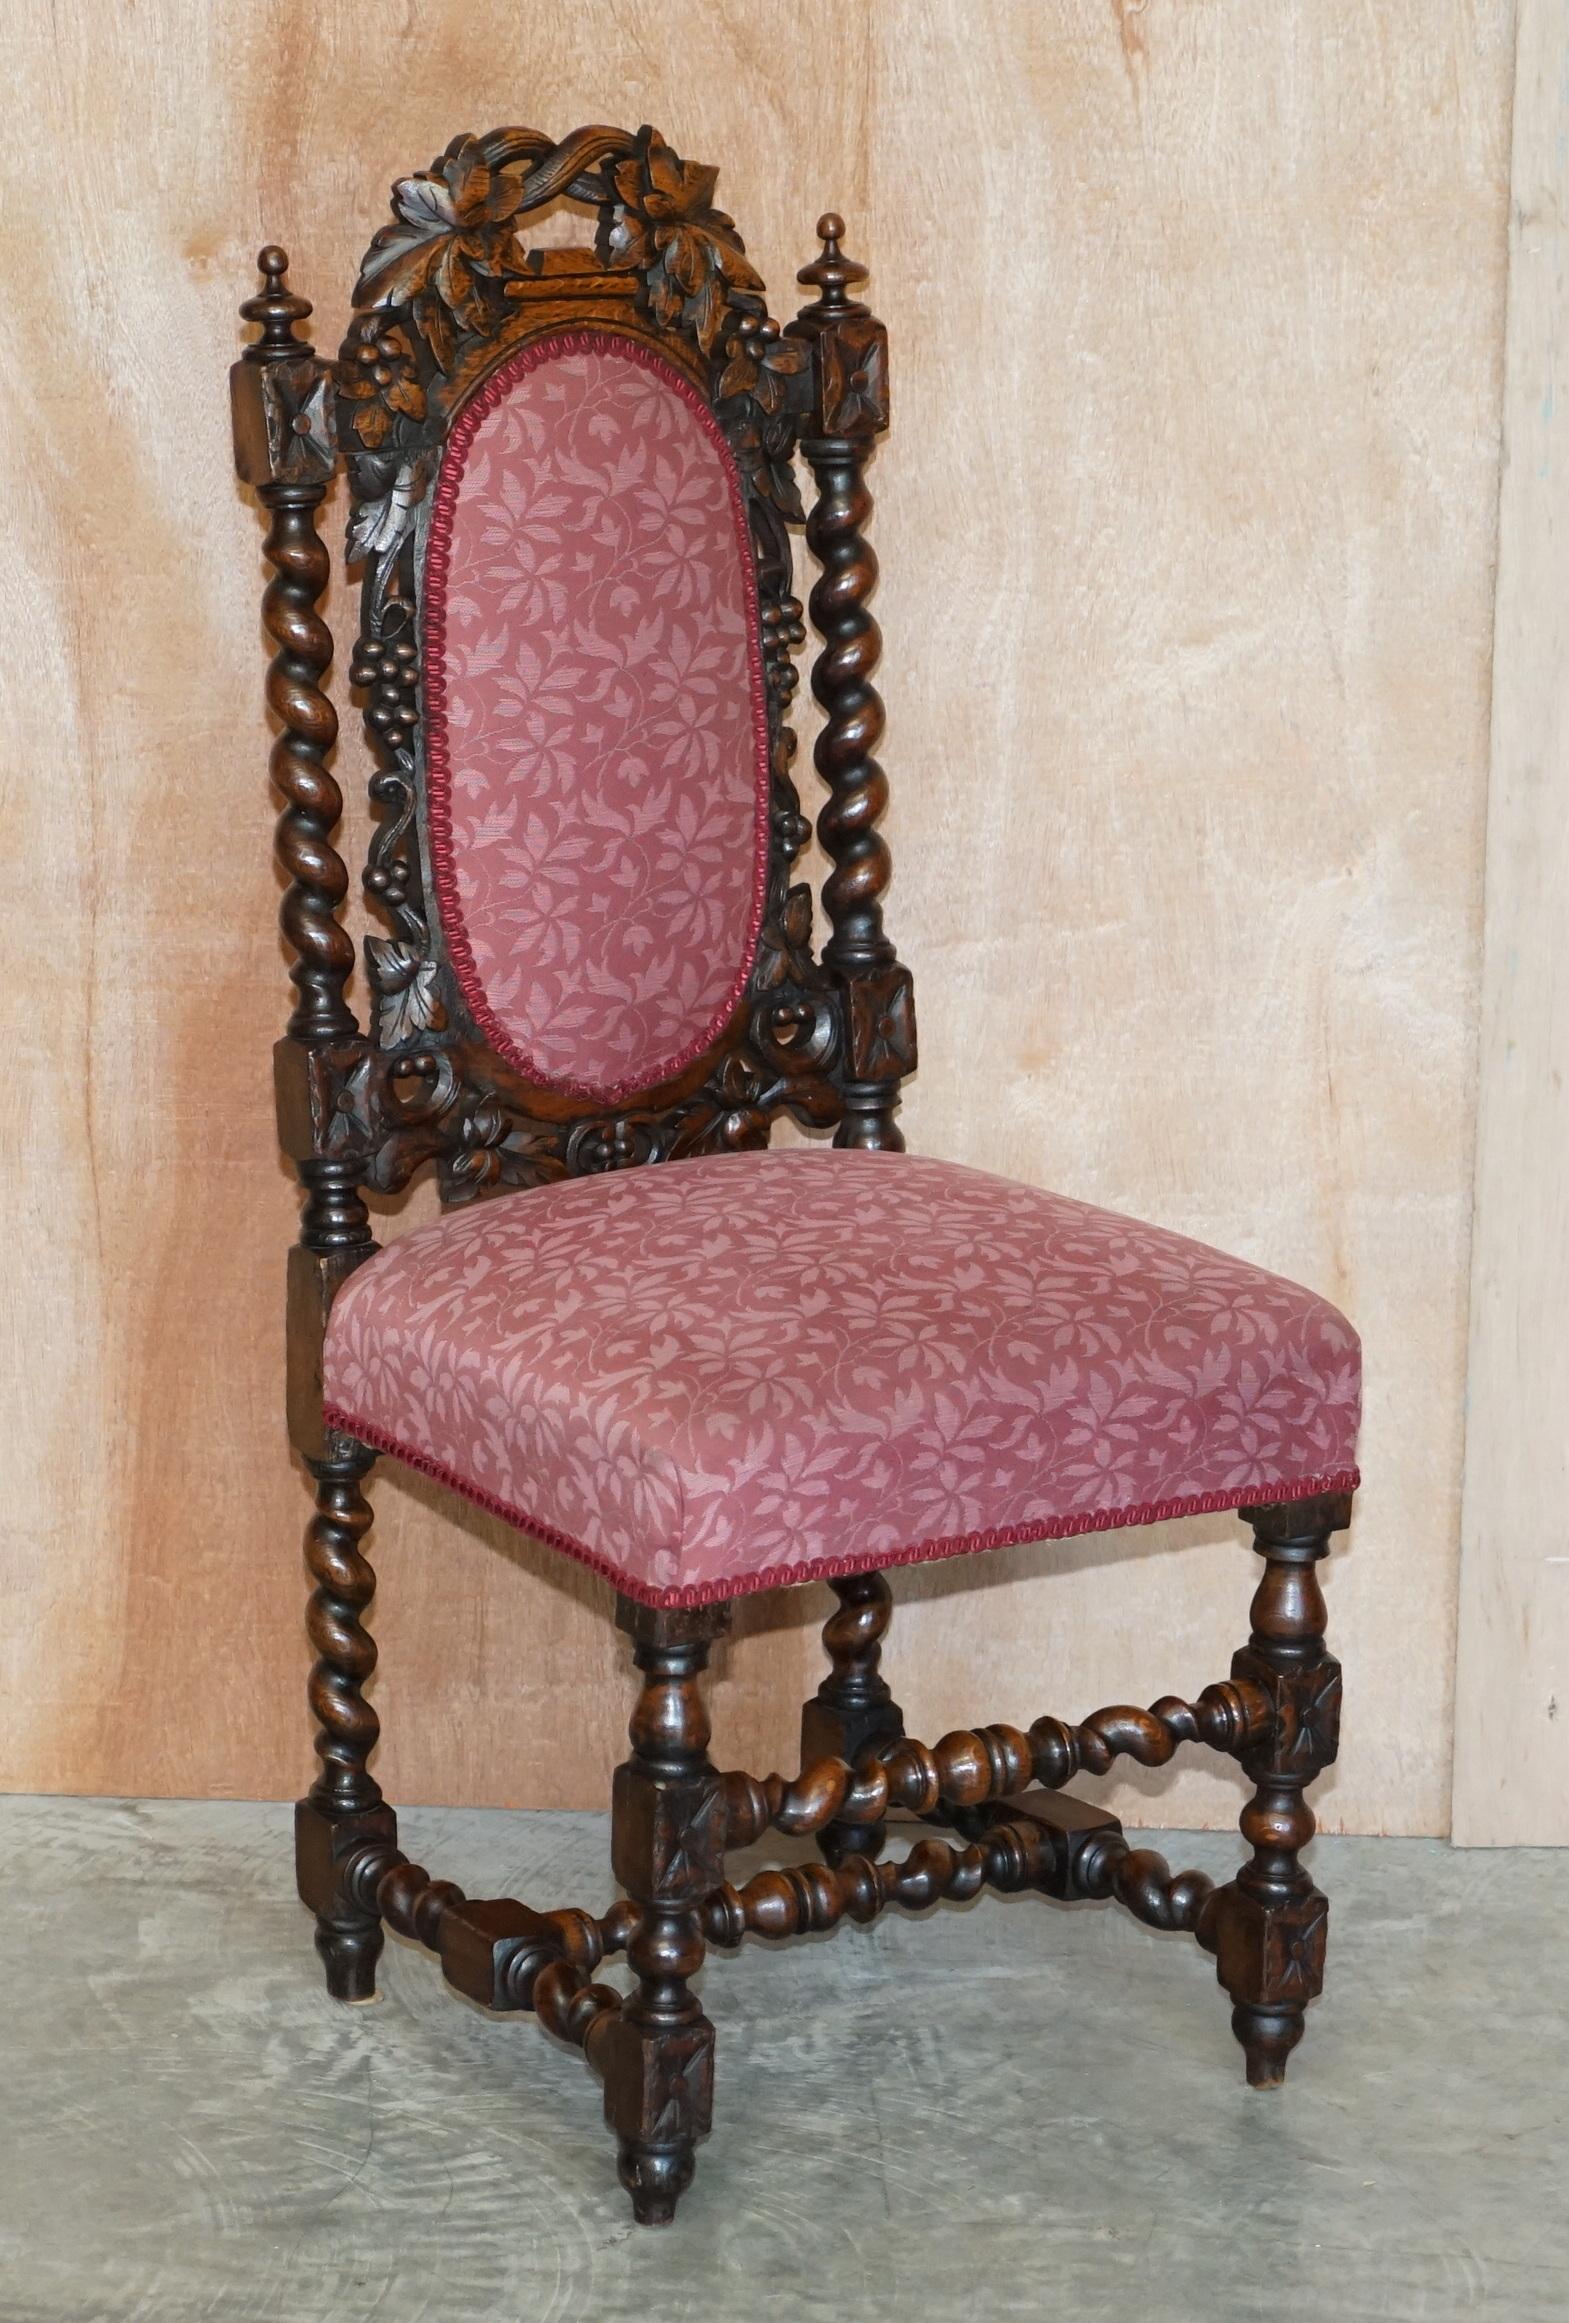 Wir freuen uns, diese schöne Suite von sechs antiken viktorianischen ca. 1860-1880 handgeschnitzte englische Eiche Esszimmerstühle mit gepolsterten Sitz Basen und Pferdehaar gefüllt Sitzpolster zum Verkauf anbieten. 

Diese gut aussehenden,